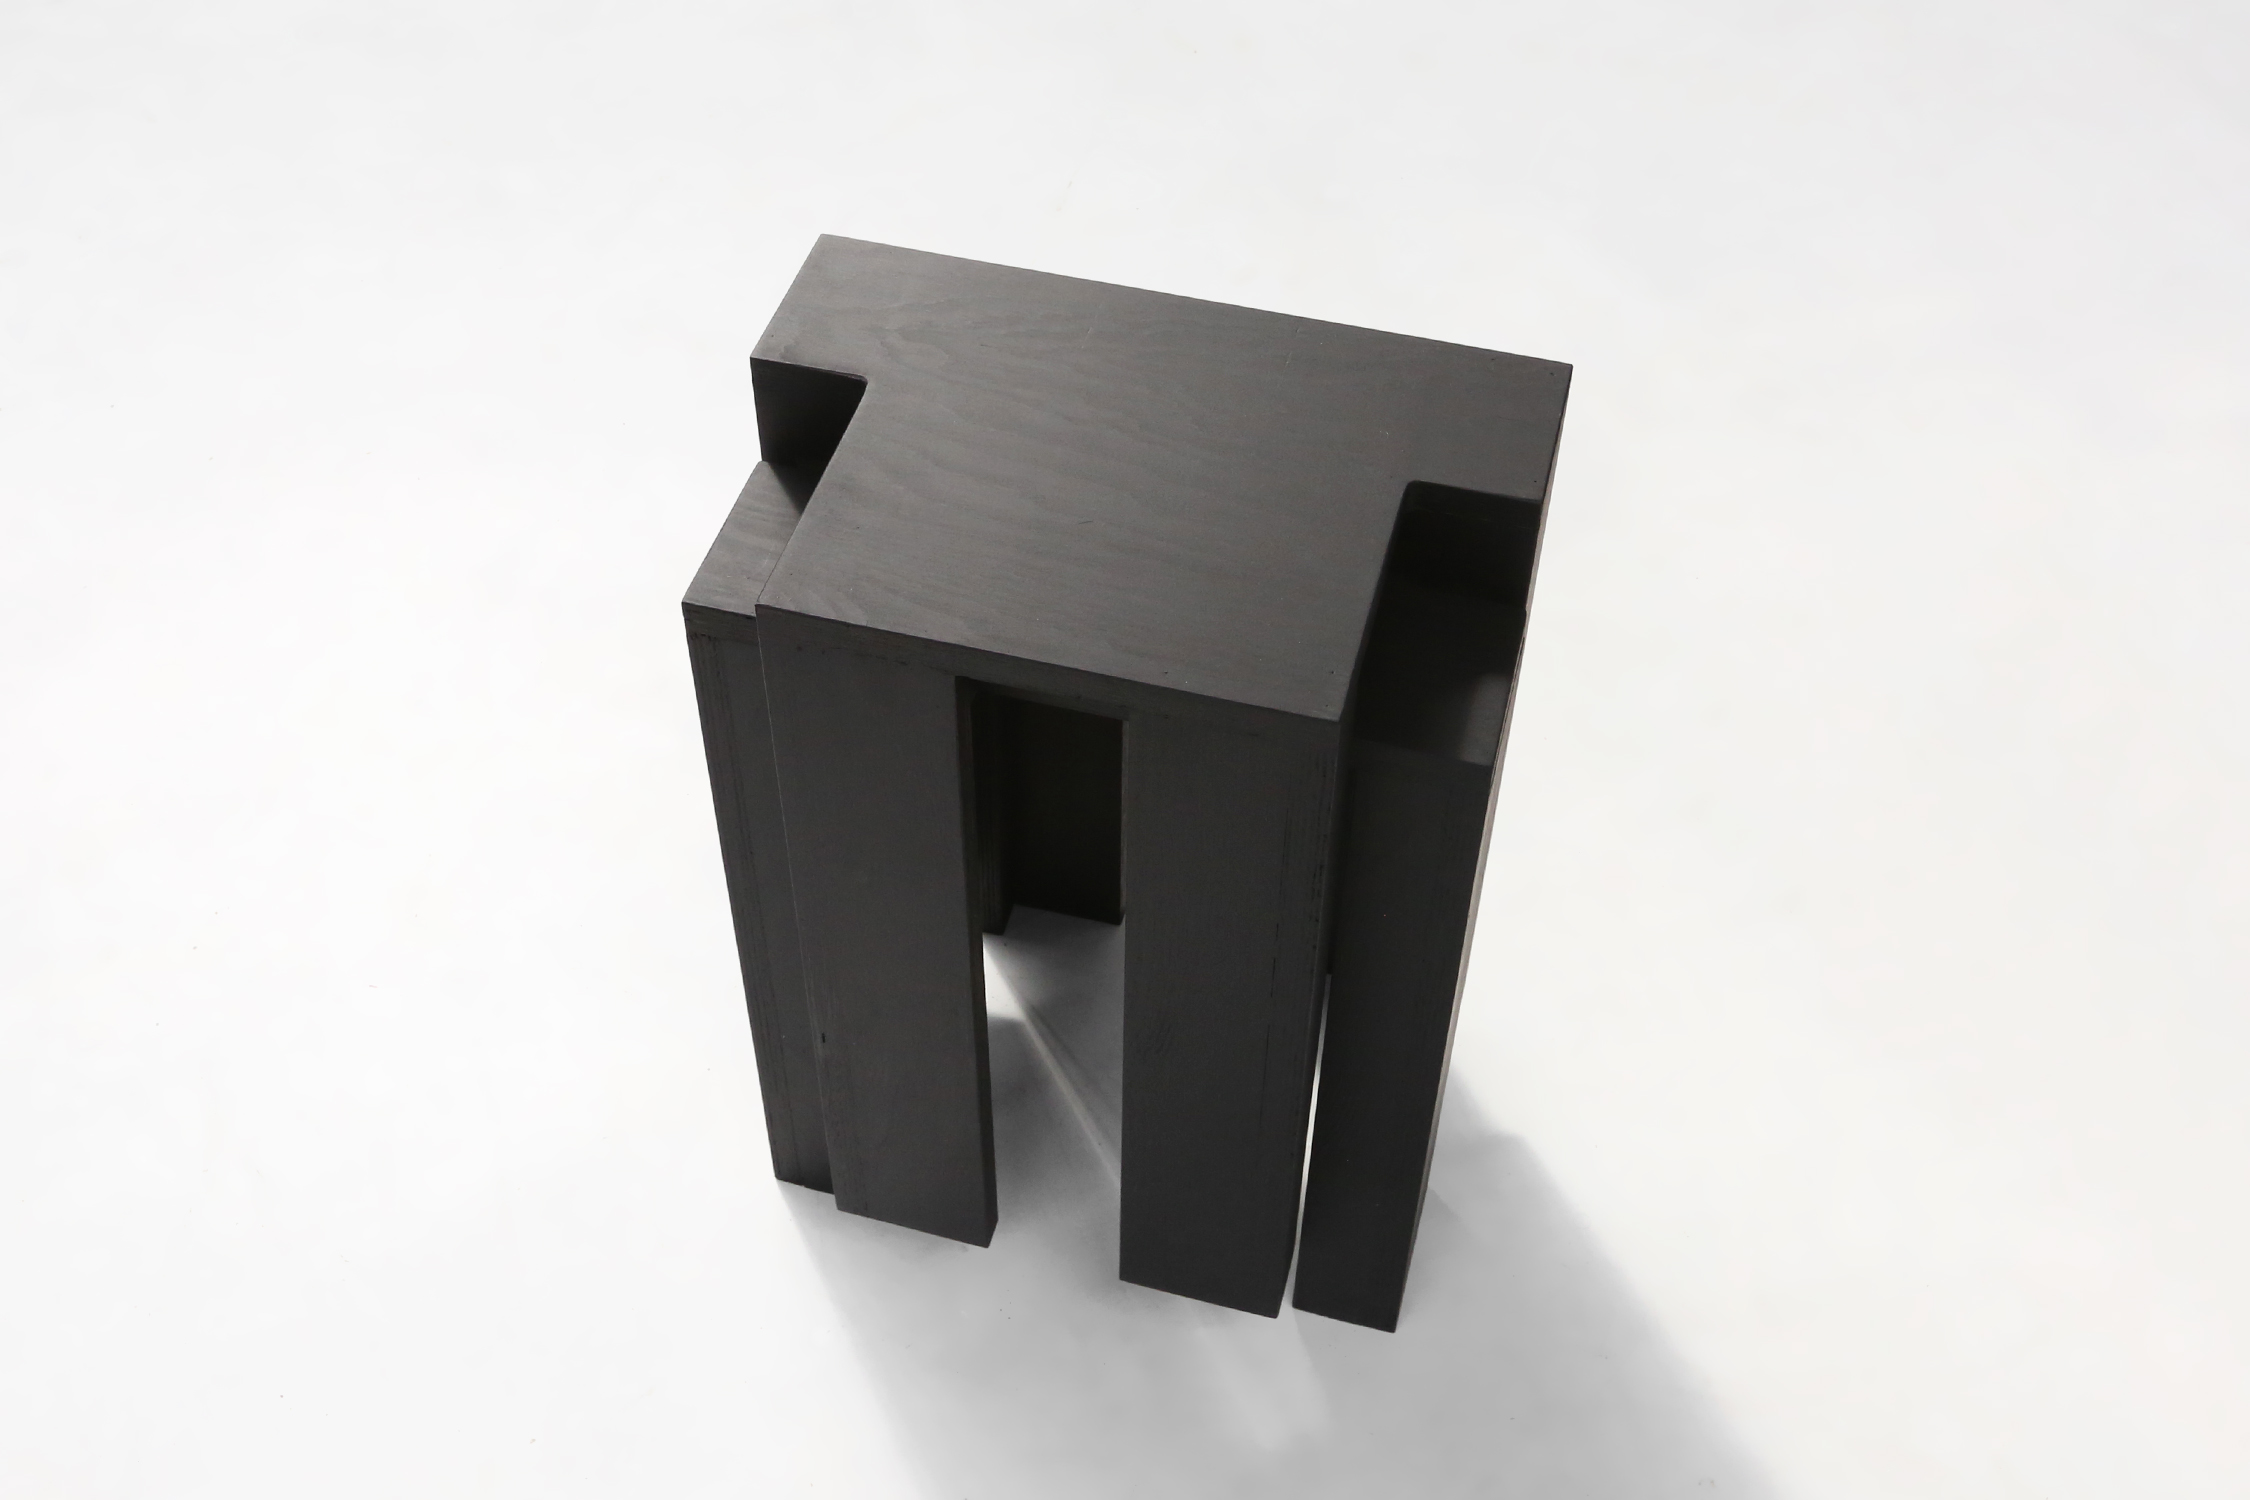 Black stackable stools of side tables by Bram Vanderbeke, Belgium, 2017thumbnail